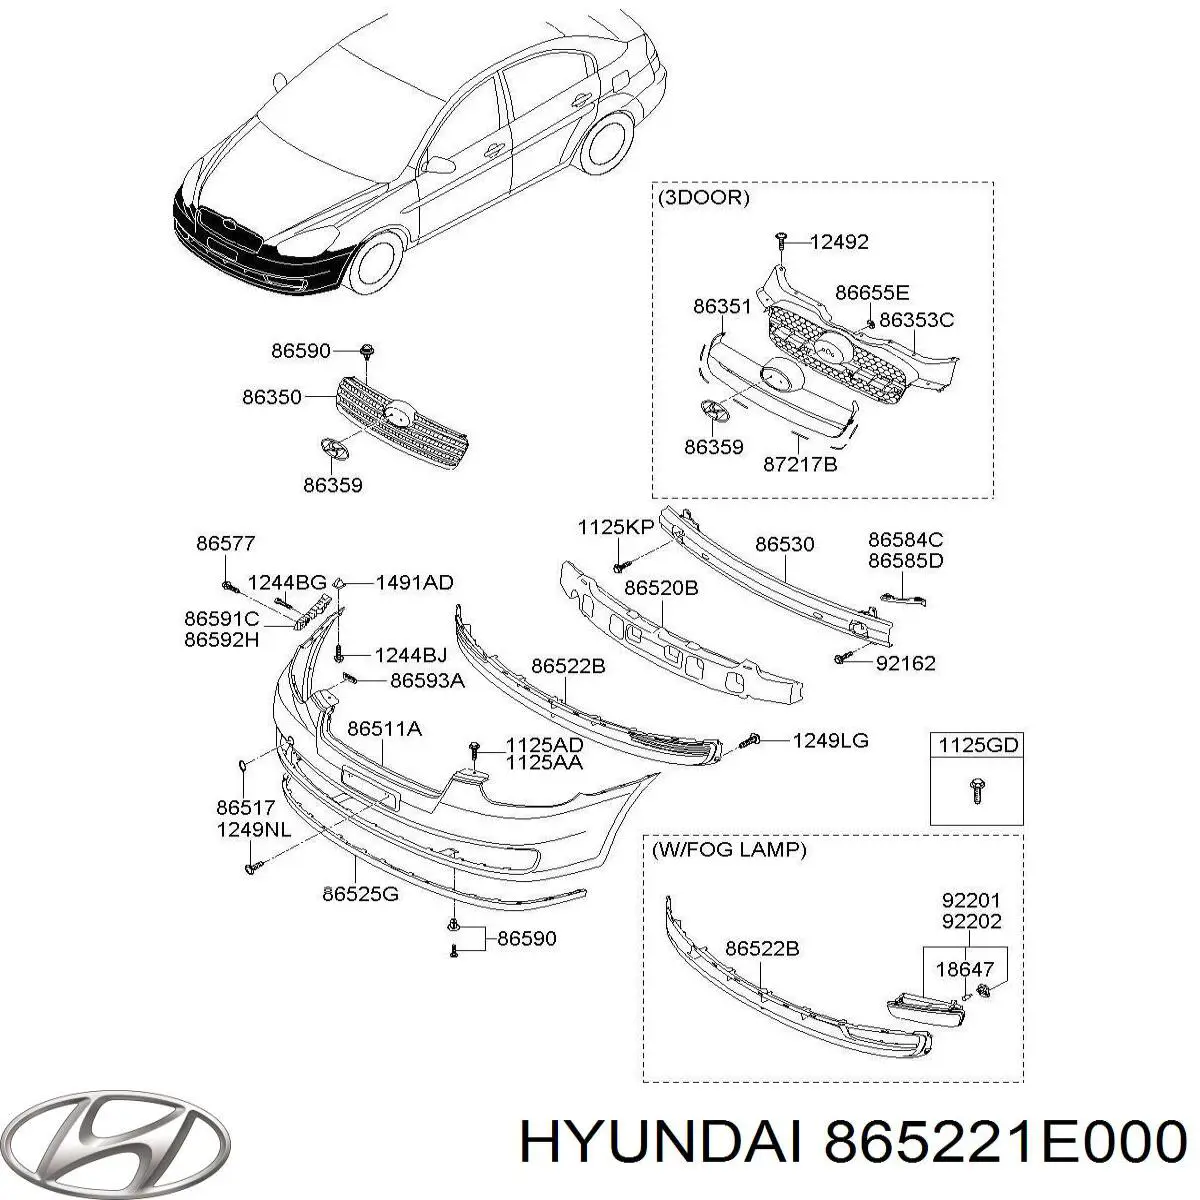 865221E000 Hyundai/Kia grelha do pára-choque dianteiro